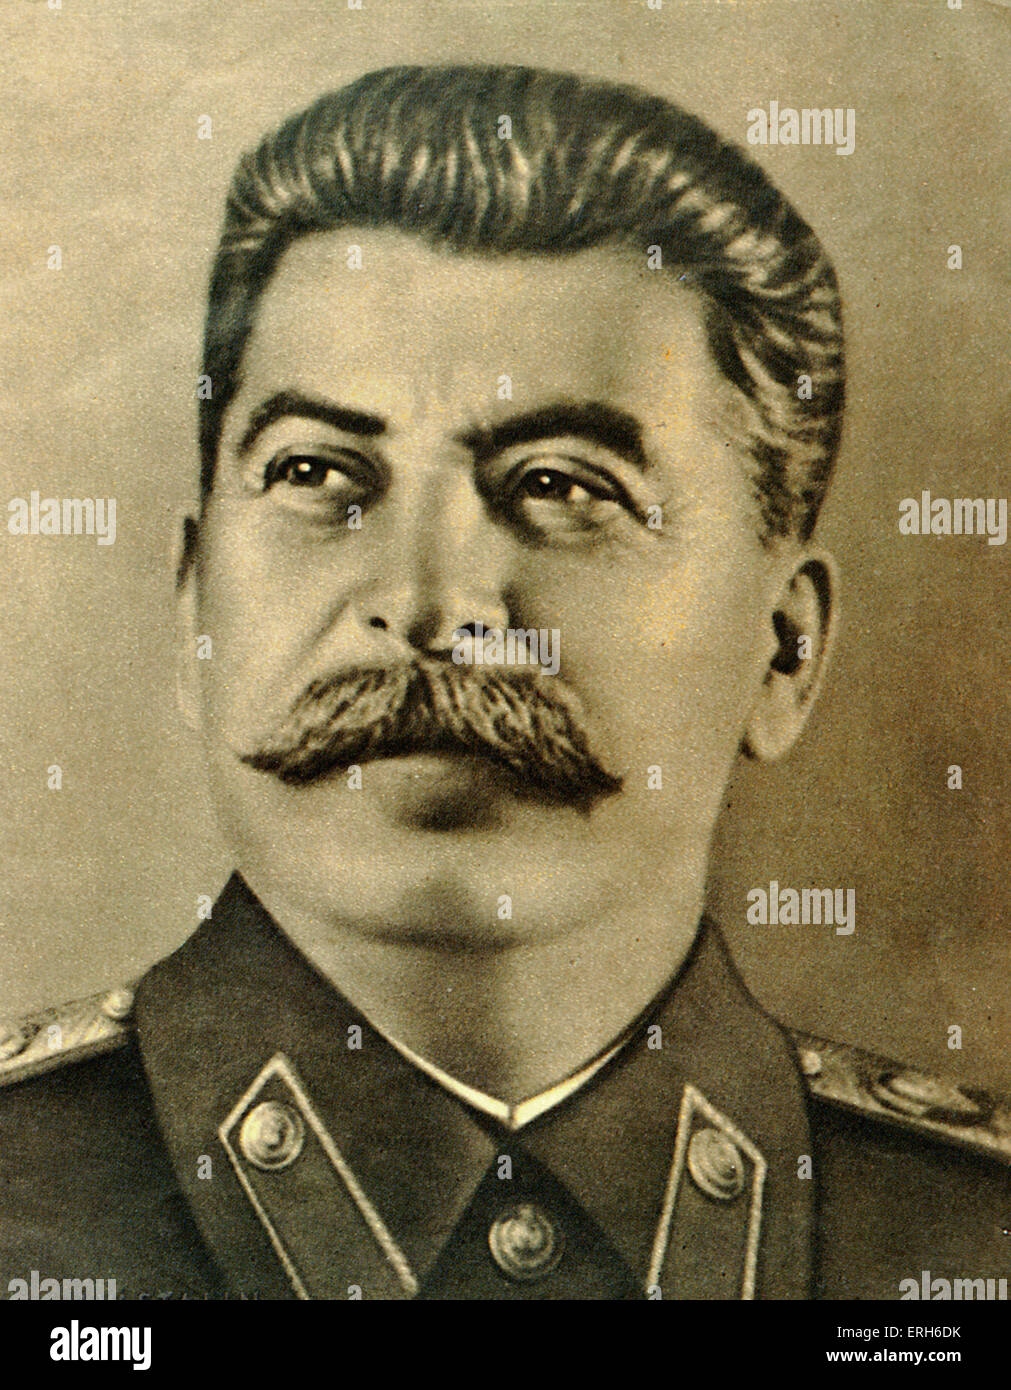 Portrait de Joseph Staline. Règle russe soviétique, chef, dictateur. 1879 - 1953. Chostakovitch et Prokofiev lien. La Russie. Banque D'Images